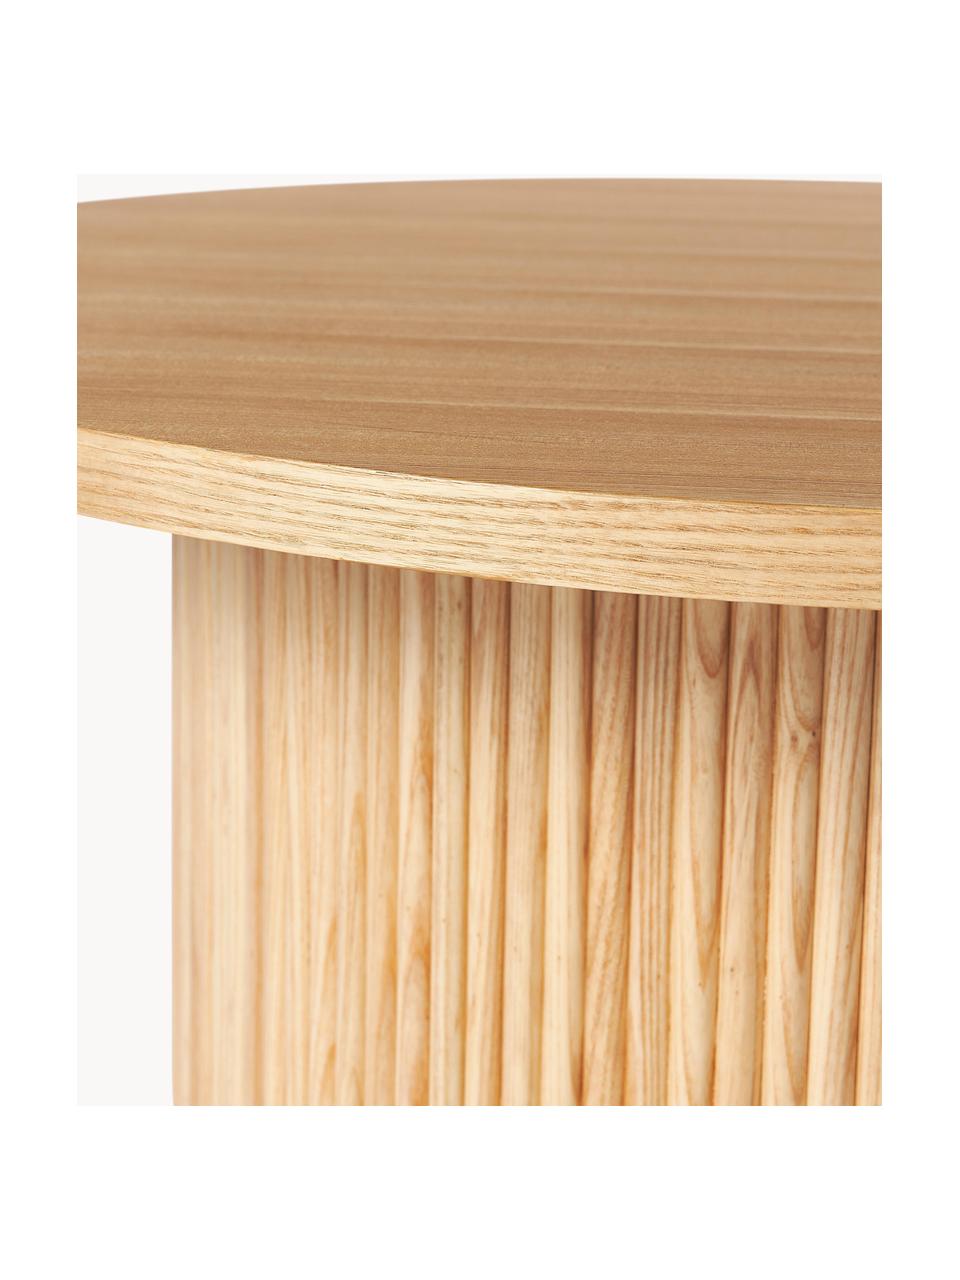 Runder Holz-Couchtisch Nele, Mitteldichte Holzfaserplatte (MDF) mit Eschenholzfurnier

Dieses Produkt wird aus nachhaltig gewonnenem, FSC®-zertifiziertem Holz gefertigt., Helles Eschenholz, Ø 85 cm